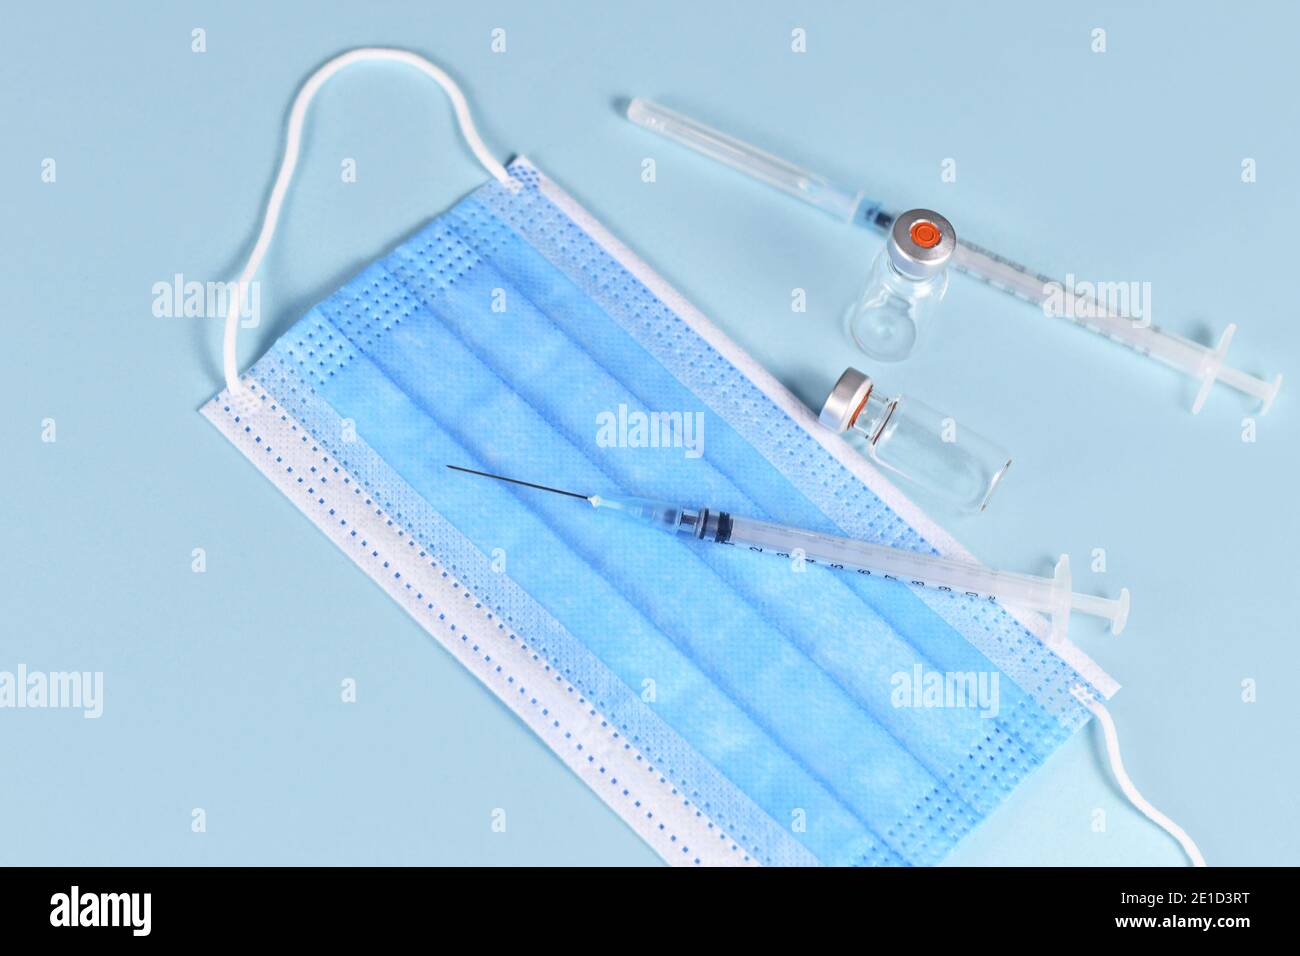 Vaccin contre le coronavirus concept avec seringue, masque facial et flacons sur fond bleu Banque D'Images